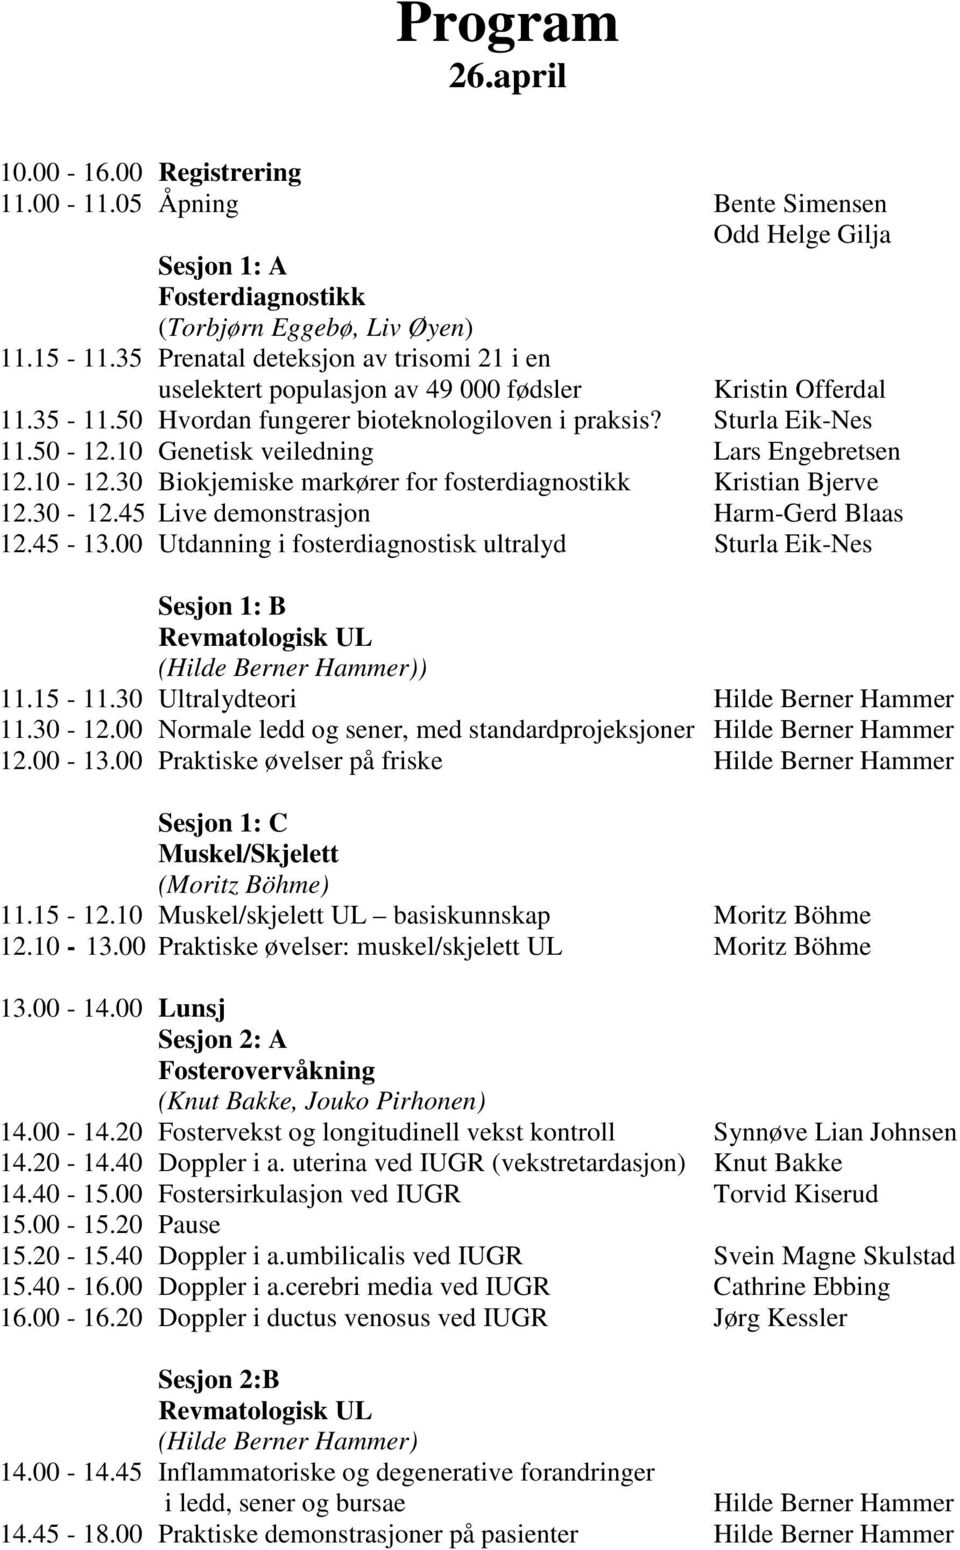 10 Genetisk veiledning Lars Engebretsen 12.10-12.30 Biokjemiske markører for fosterdiagnostikk Kristian Bjerve 12.30-12.45 Live demonstrasjon Harm-Gerd Blaas 12.45-13.